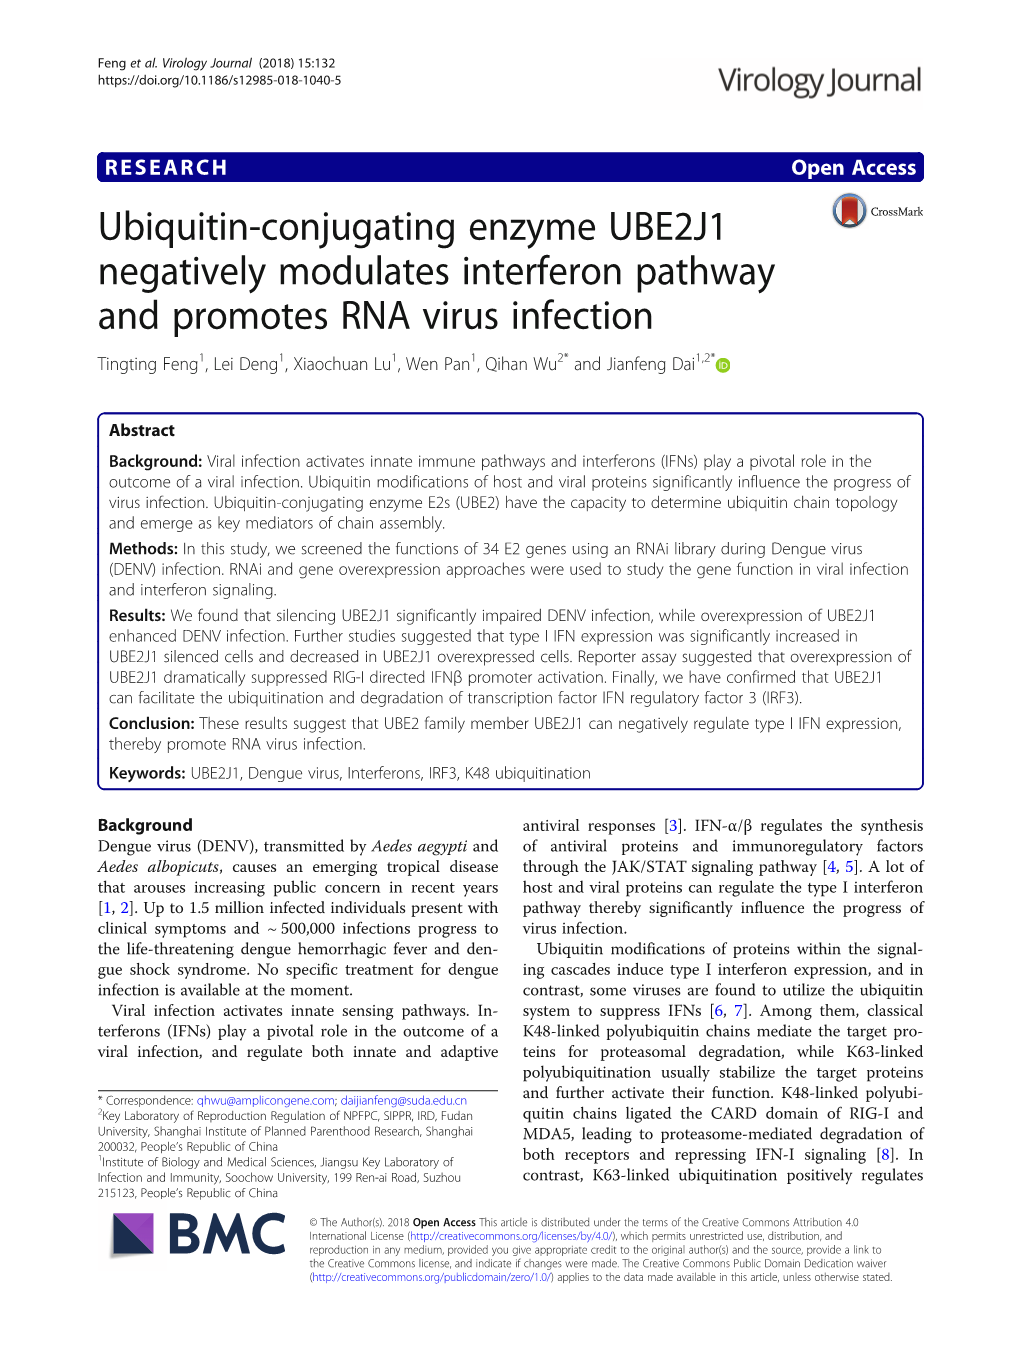 Ubiquitin-Conjugating Enzyme UBE2J1 Negatively Modulates